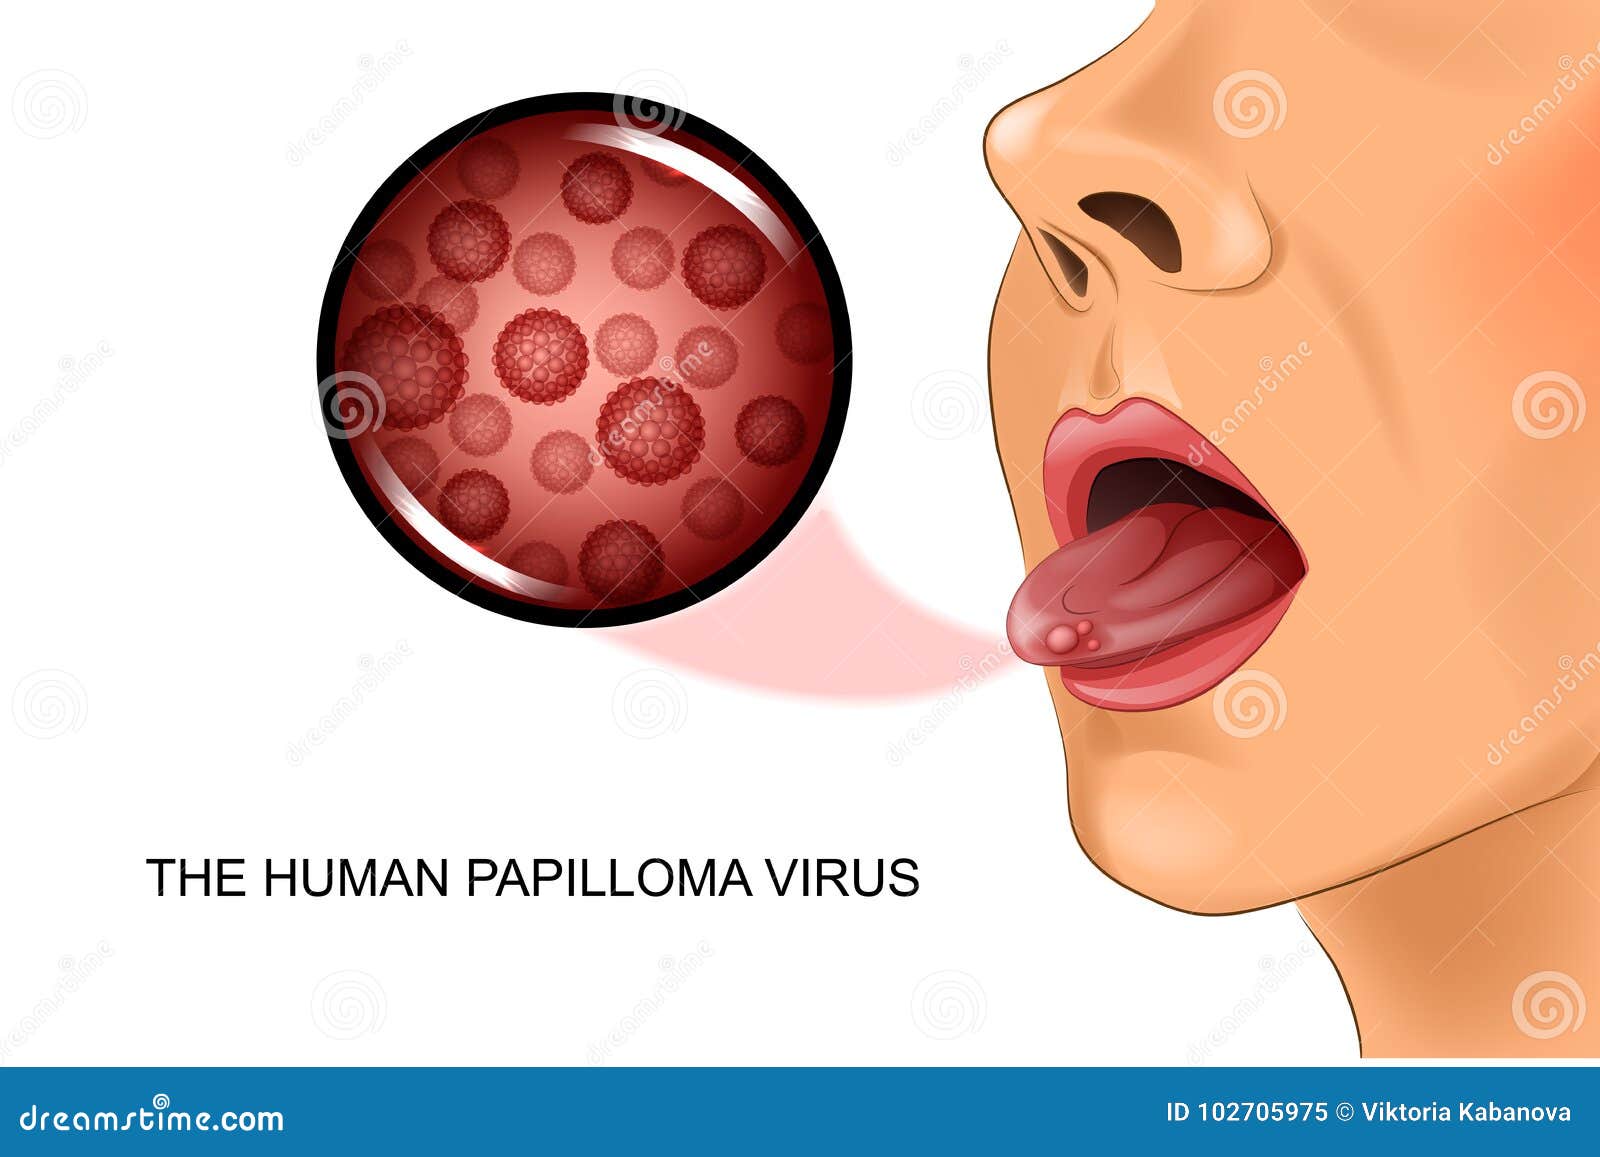 papillomavirus homme langue)